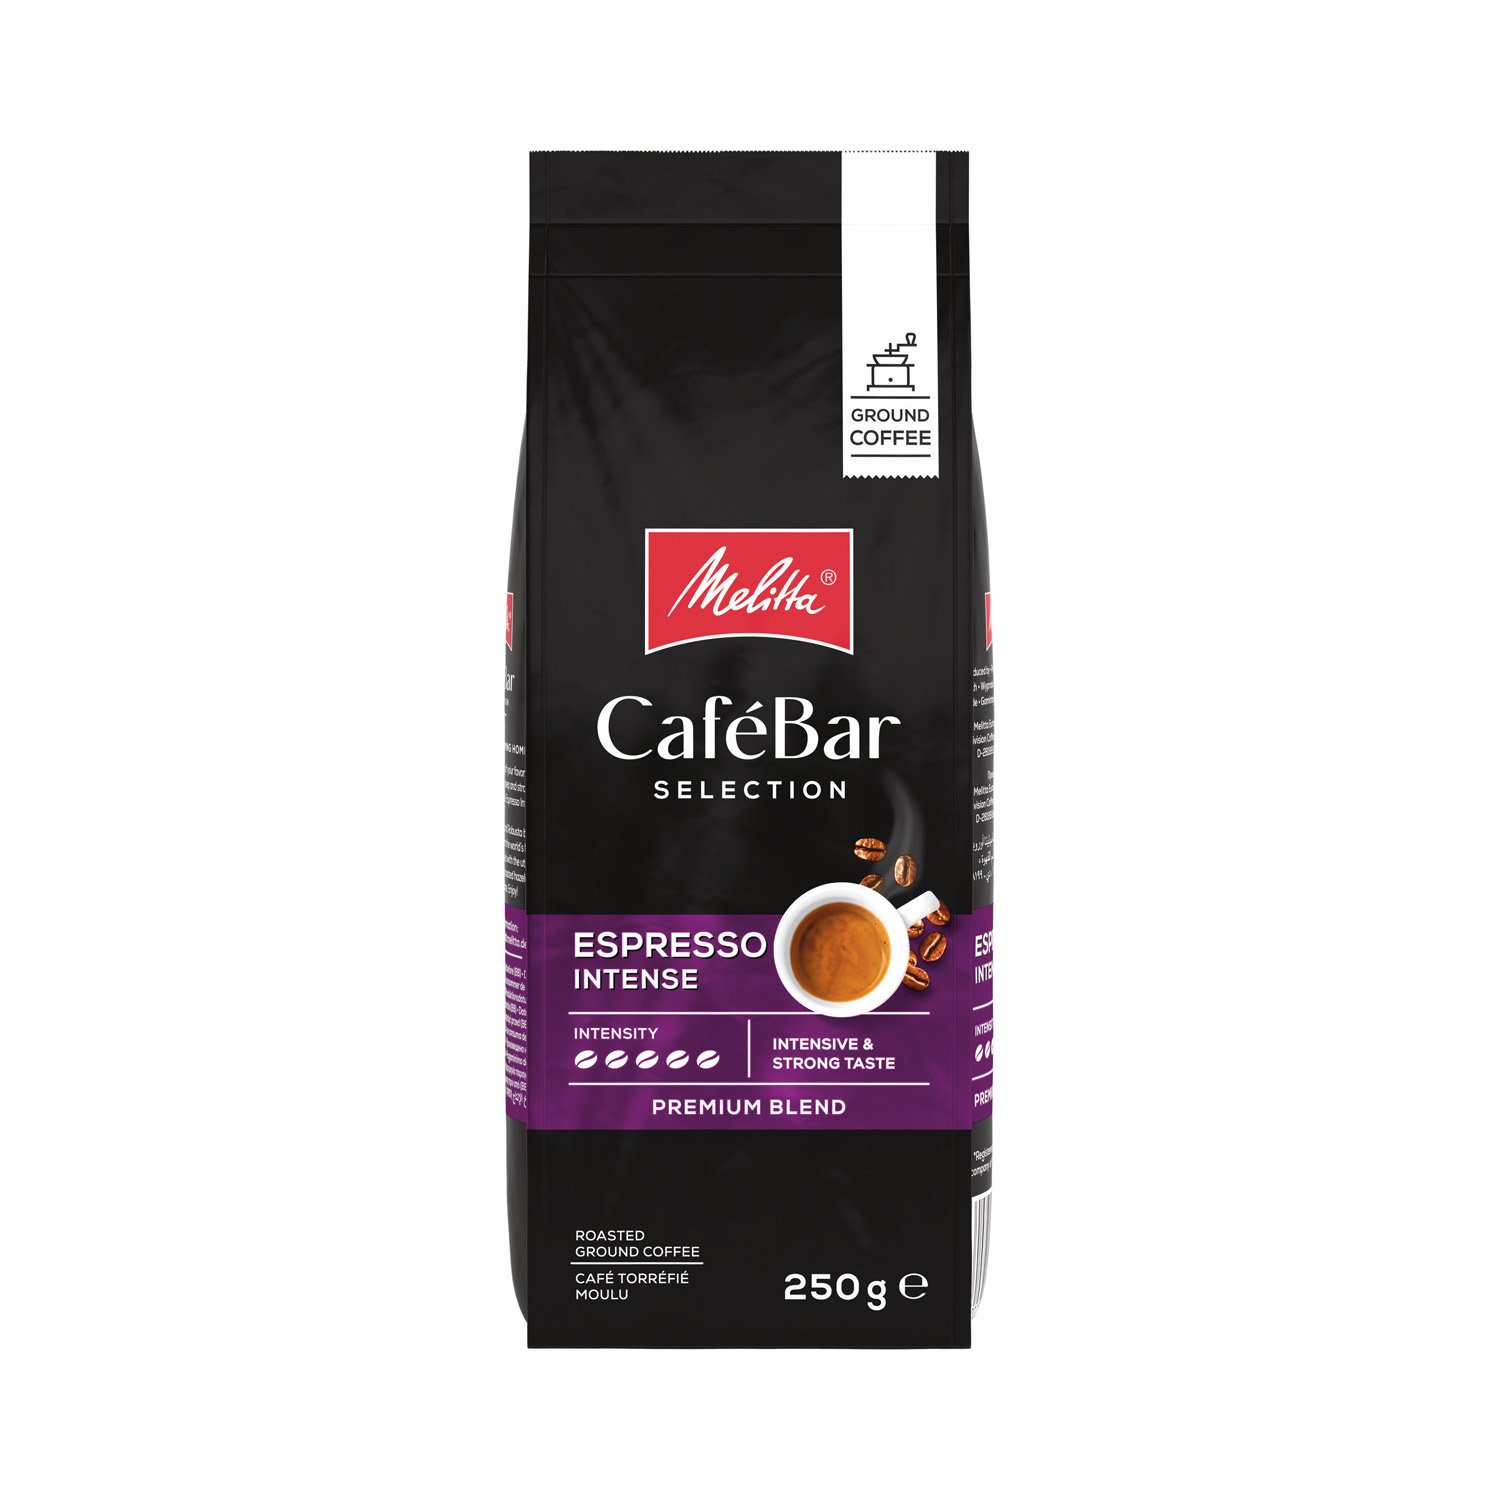 Melitta CafeBar Selection Espresso Intense Öğütülmüş Kahve 250GR